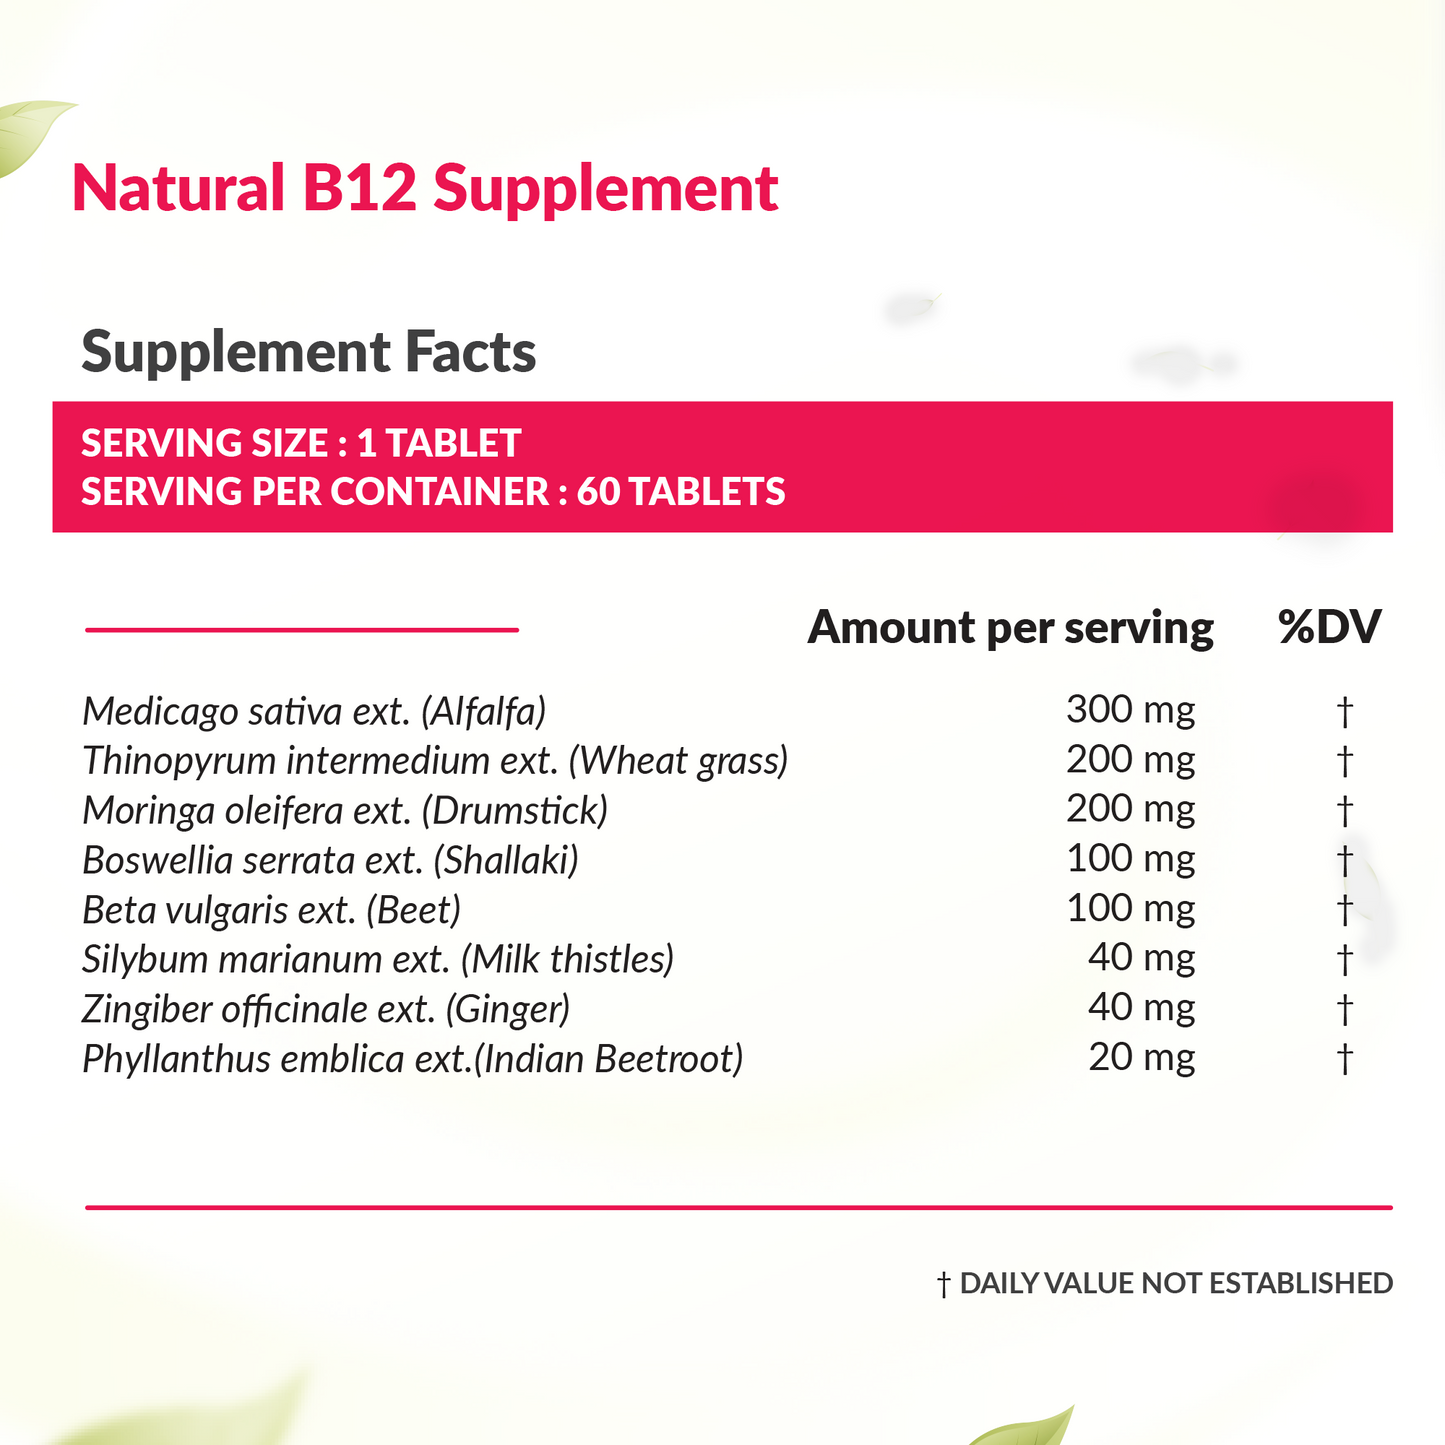 Shilajit + Natural Vit B12 supplement